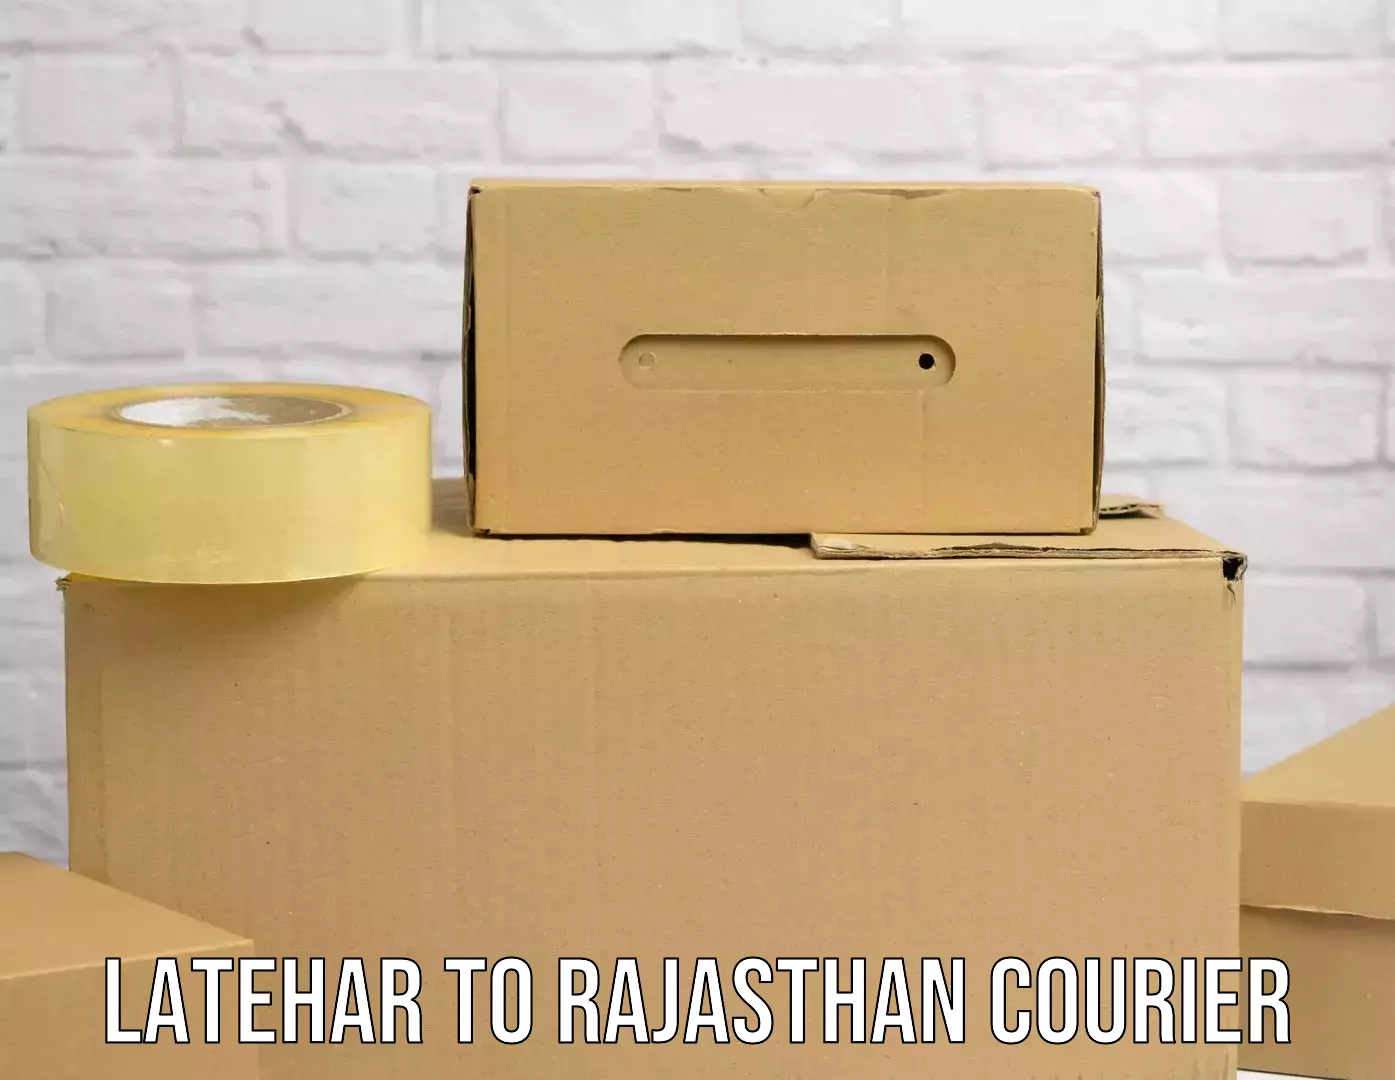 Modern parcel services Latehar to Jhalawar